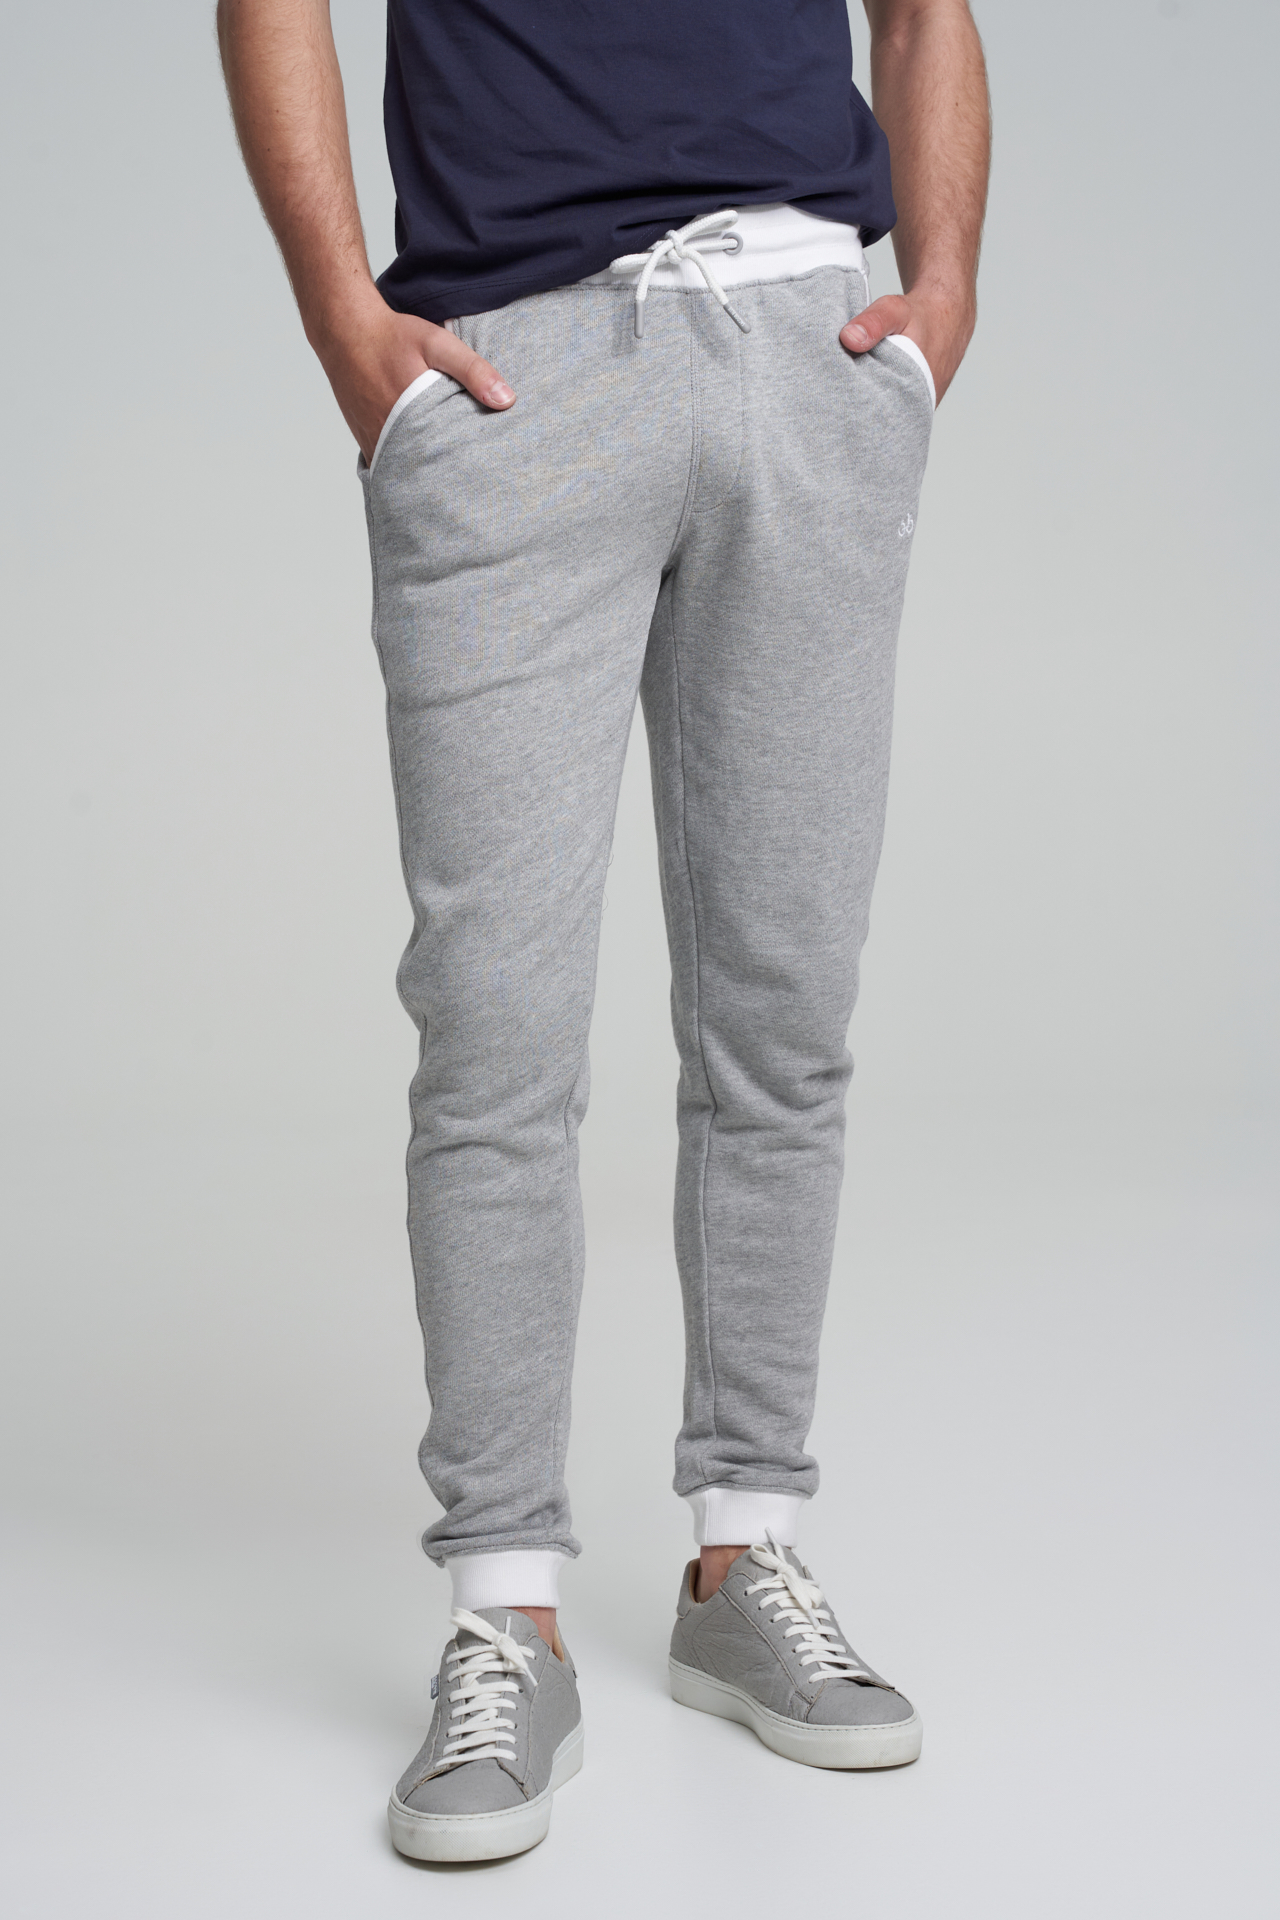 Sportswear Trousers Mix Grey Sport Man